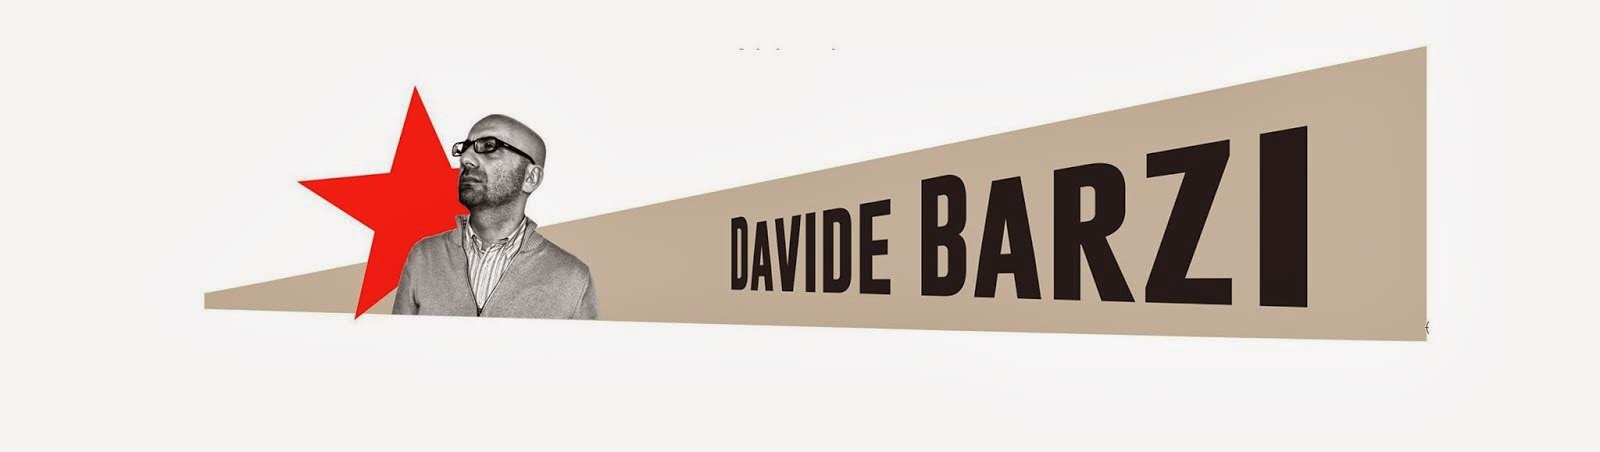 DAVIDE BARZI